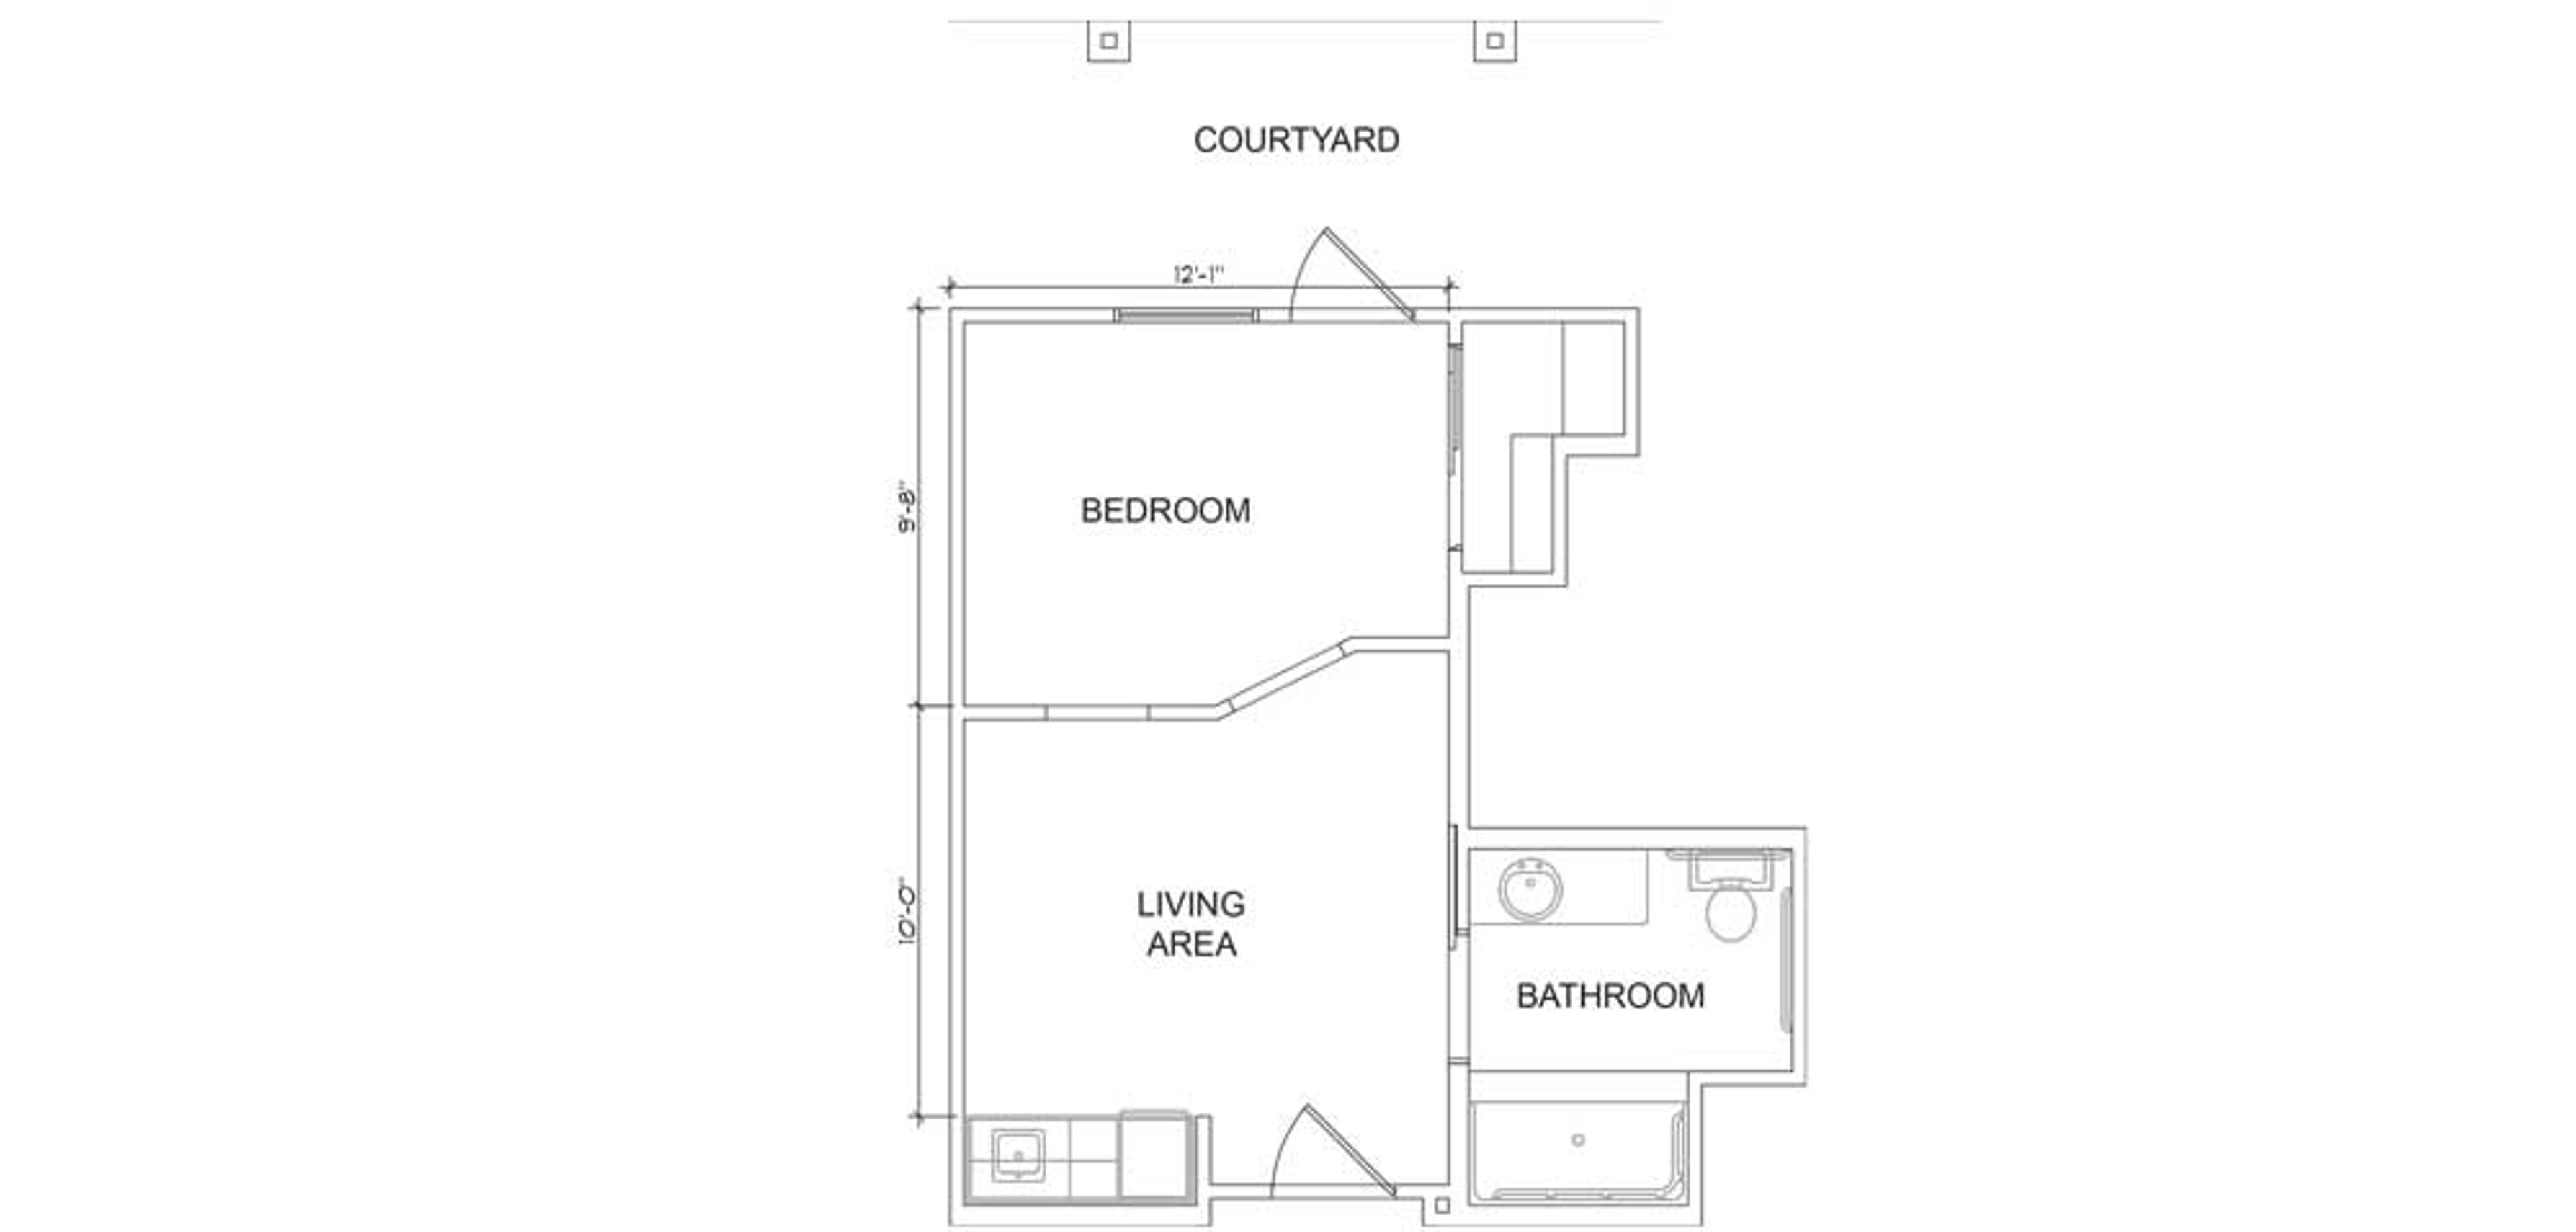 Floorplan - Azalea Trails - 1B 1B Courtyard AL